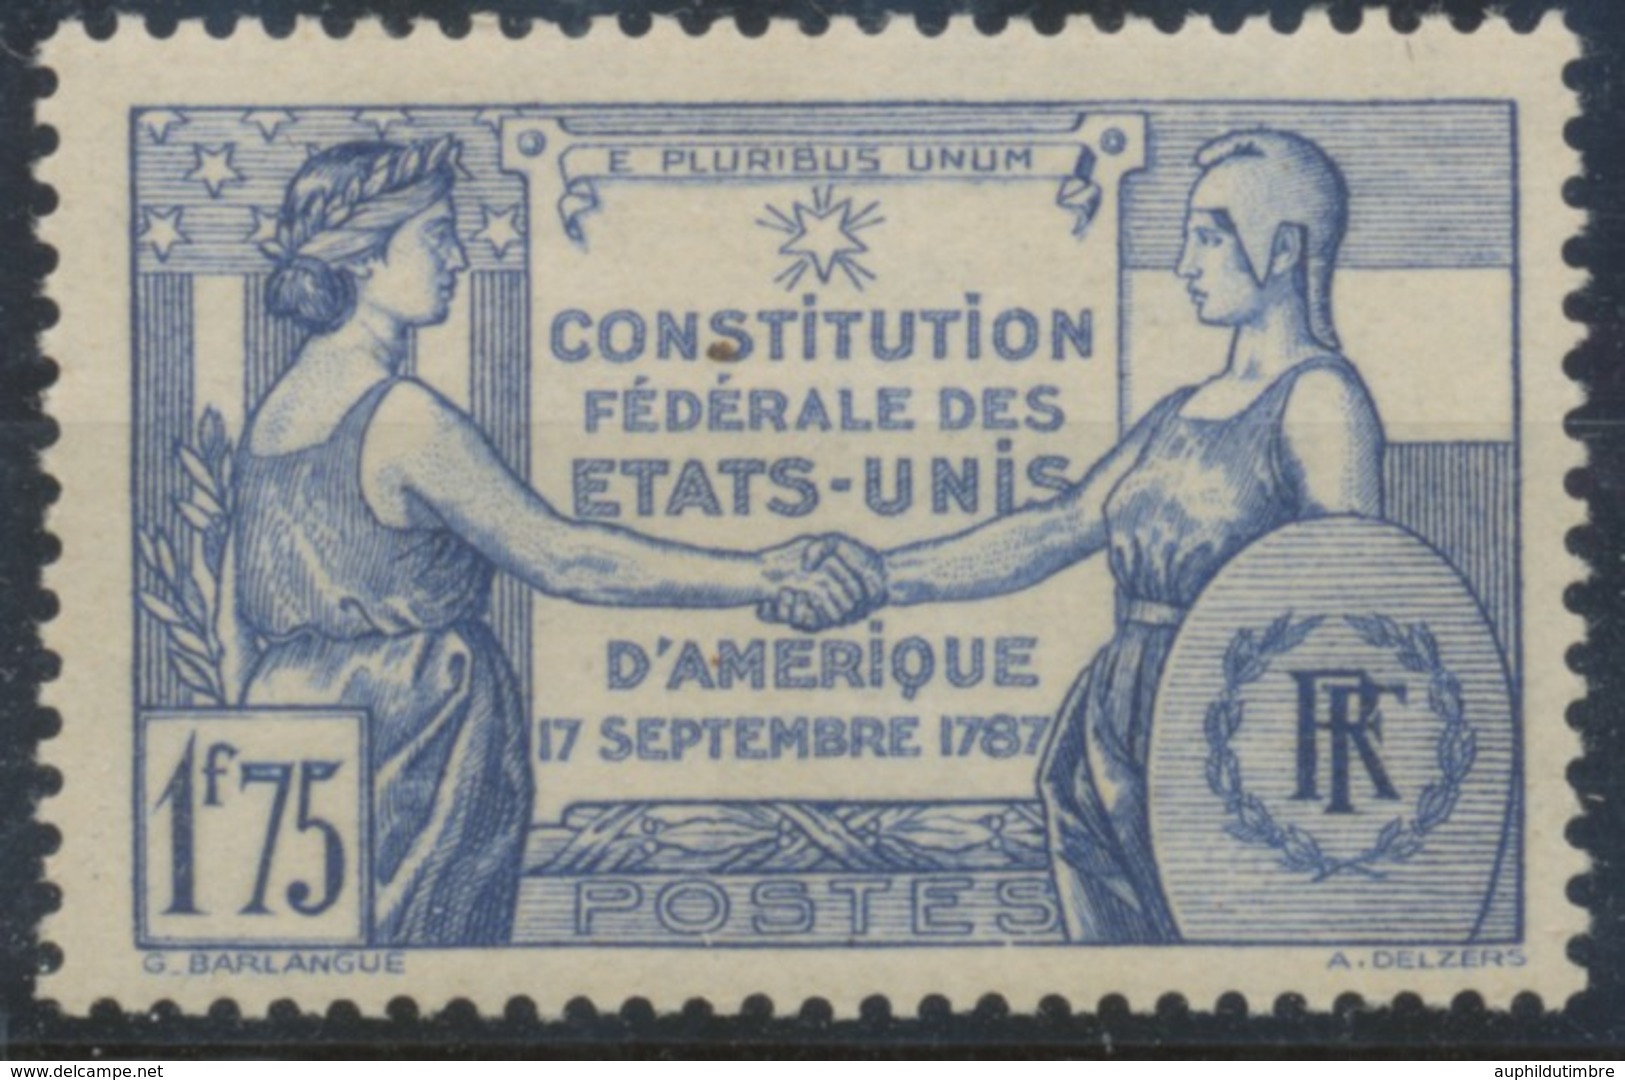 Sesquicentenaire De La Constitution Des Etats-Unis. 1f.75 Outremer Neuf Luxe ** Y357 - Neufs